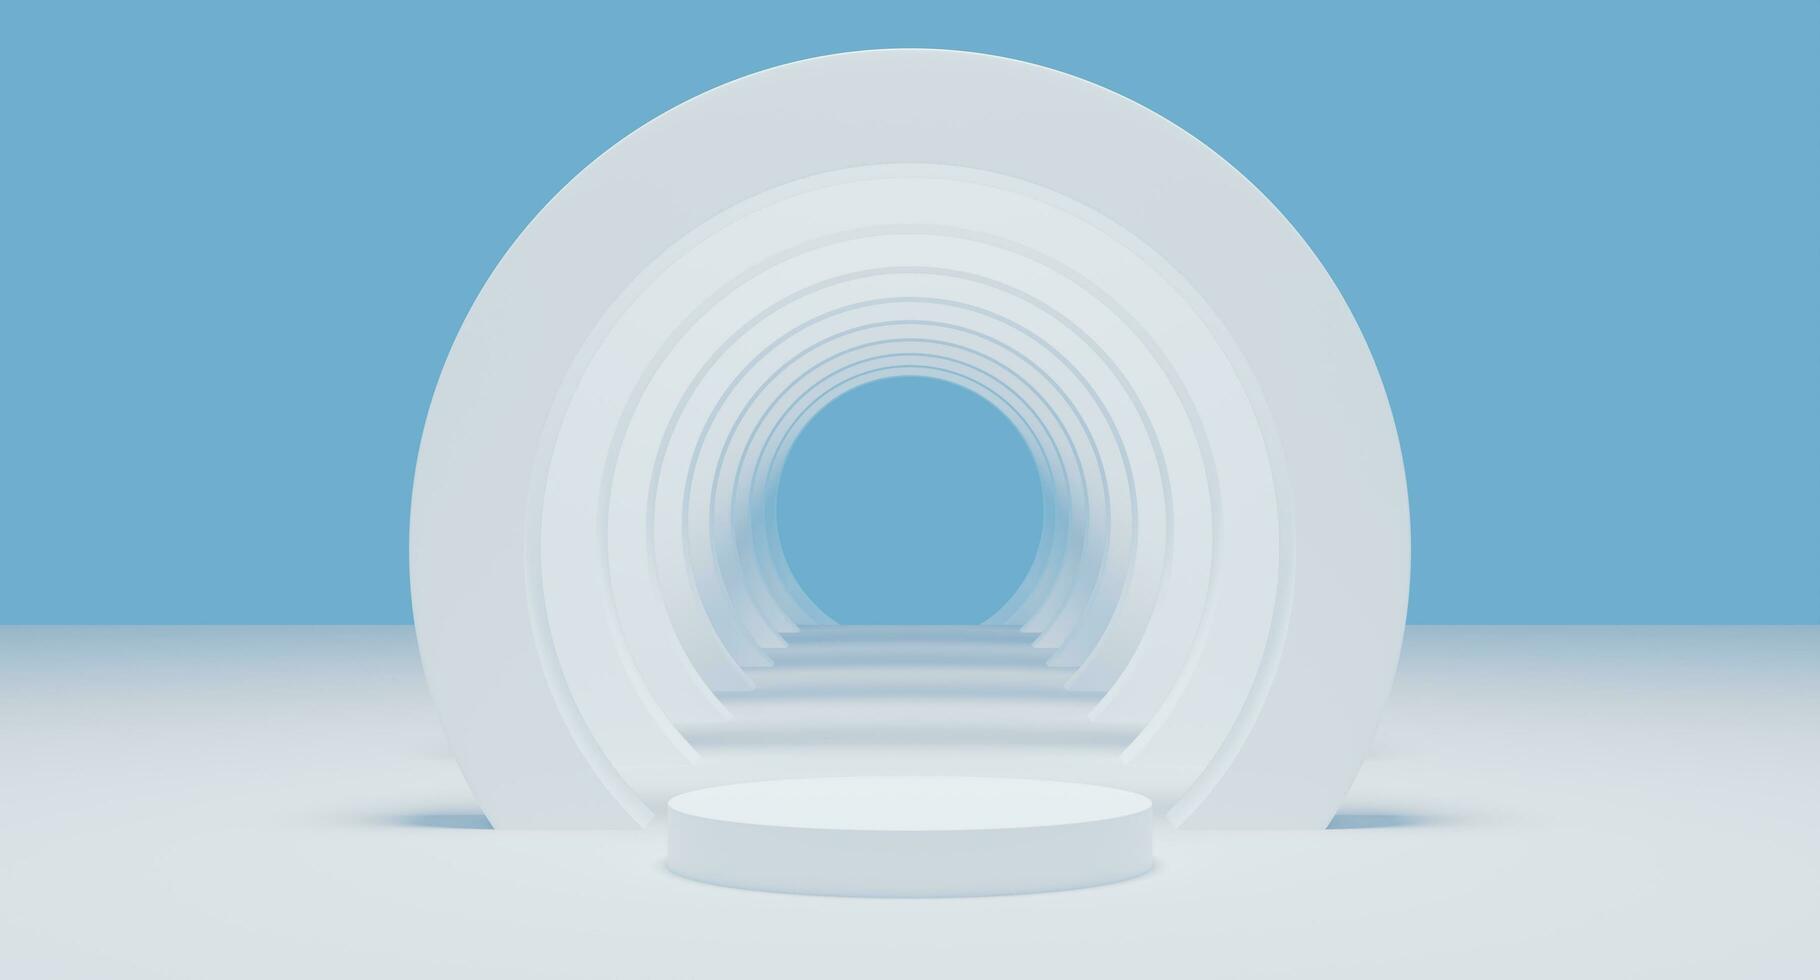 bianca parete vuoto cilindro pavimento 3d resa. bianca leggero luminosa cerchio nel podio minimo studio sfondo. astratto geometrico forma oggetto su blu illustrazione. minimo concetto foto